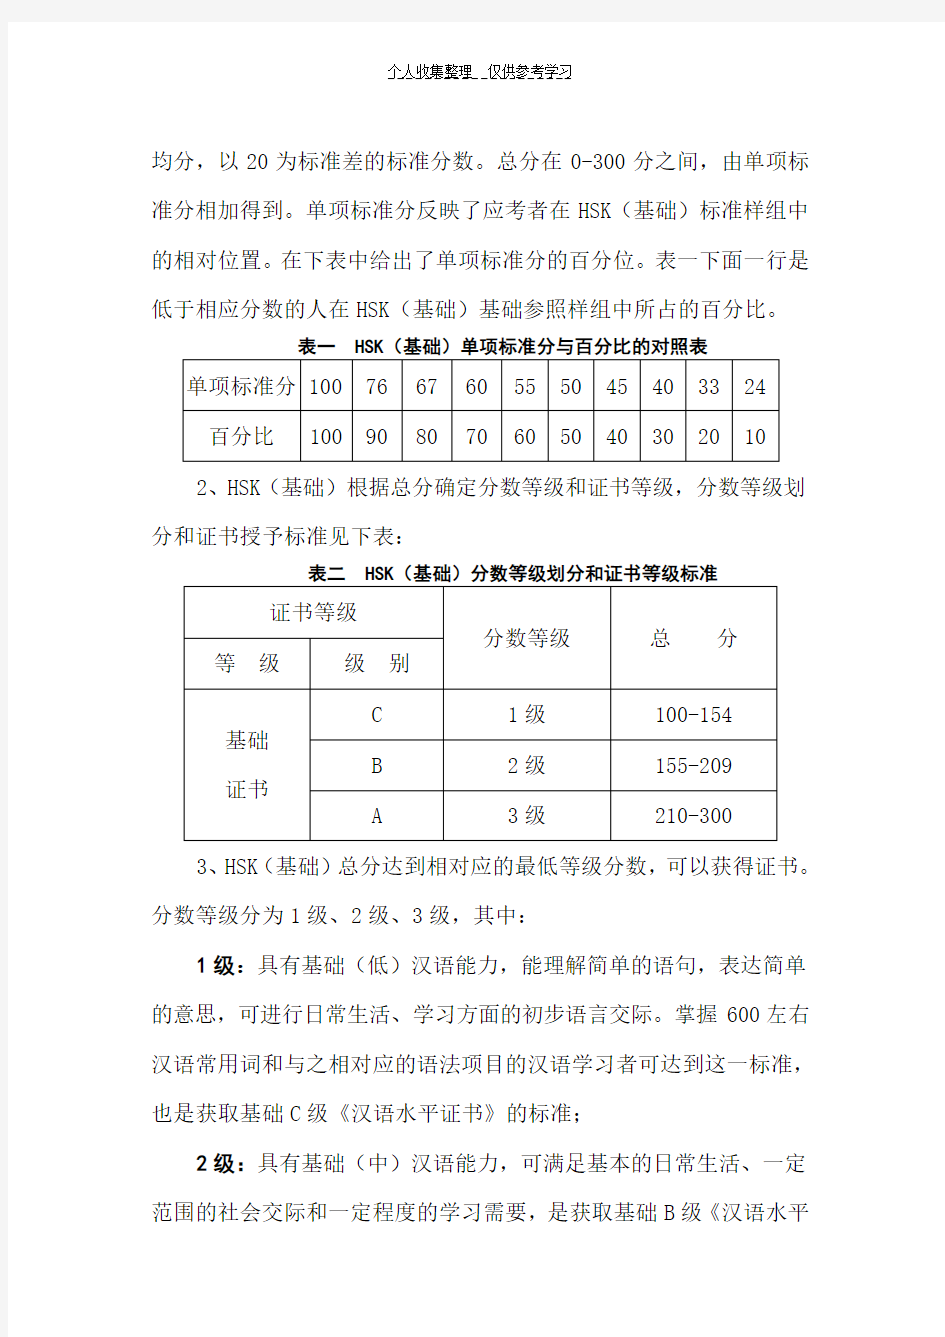 汉语水平考试(HSK)分数体系